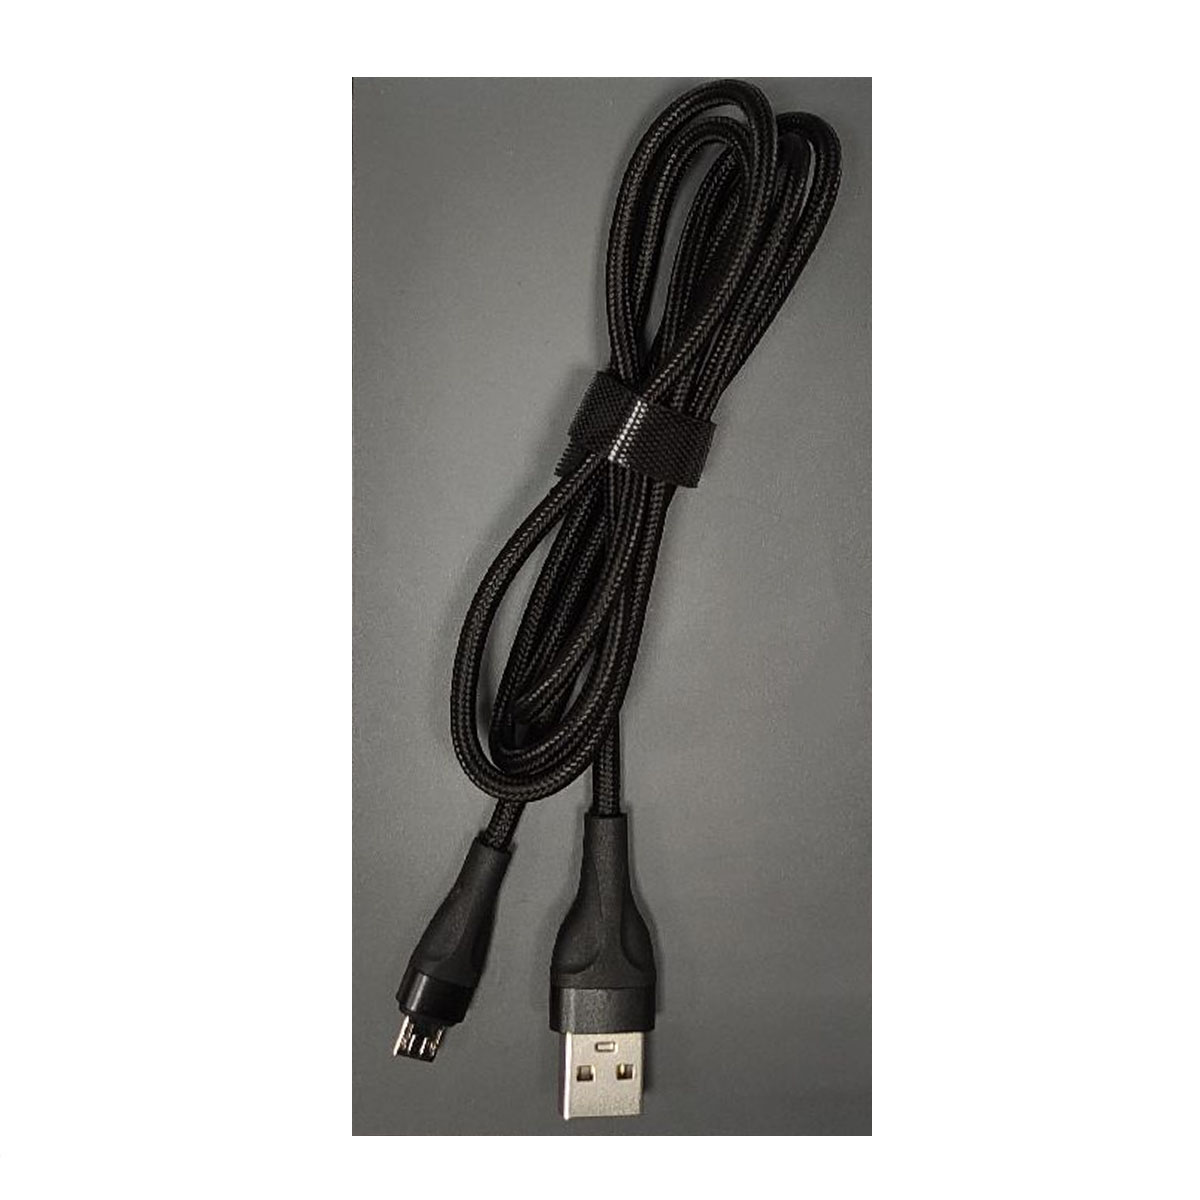 Кабель XB X35m Micro USB, длина 1 метр, цвет черный